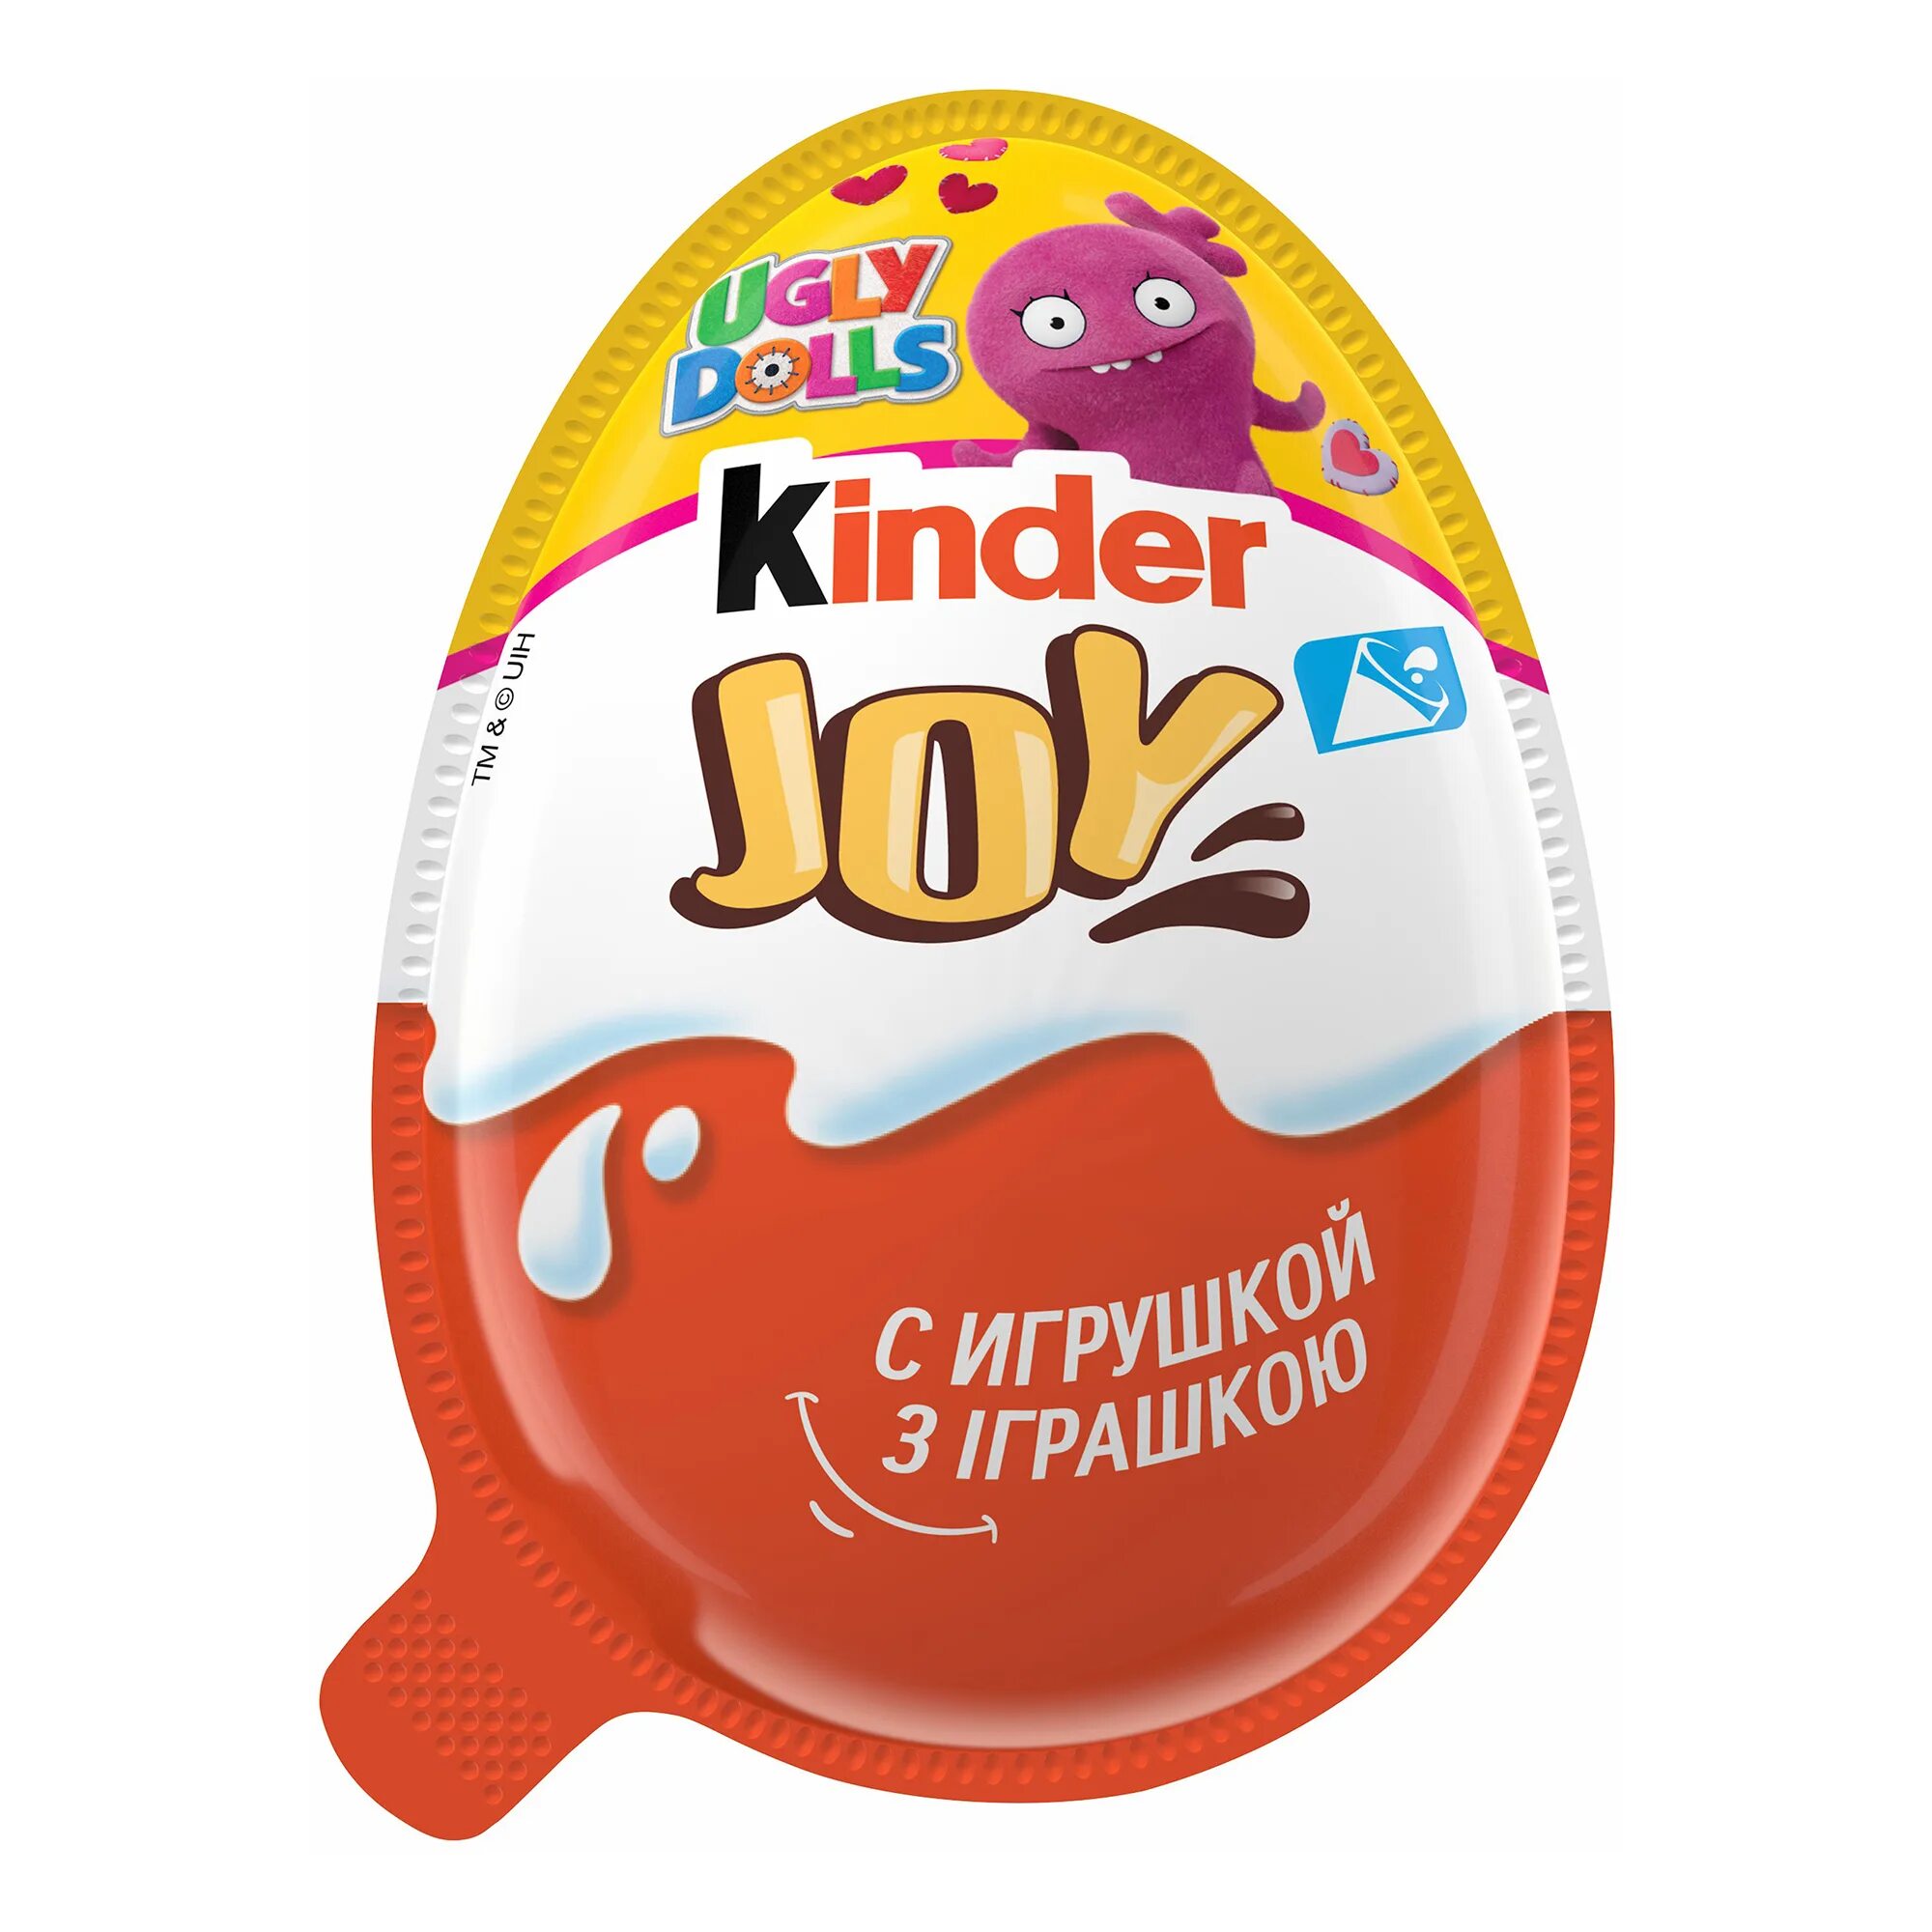 Киндер джой игрушки. Яйцо шоколадное kinder Джой 20г. Яйцо kinder Joy шоколадное, 20 г. Kinder Joy (Киндер Джой) для мальчиков. Uglydolls Киндер Джой.